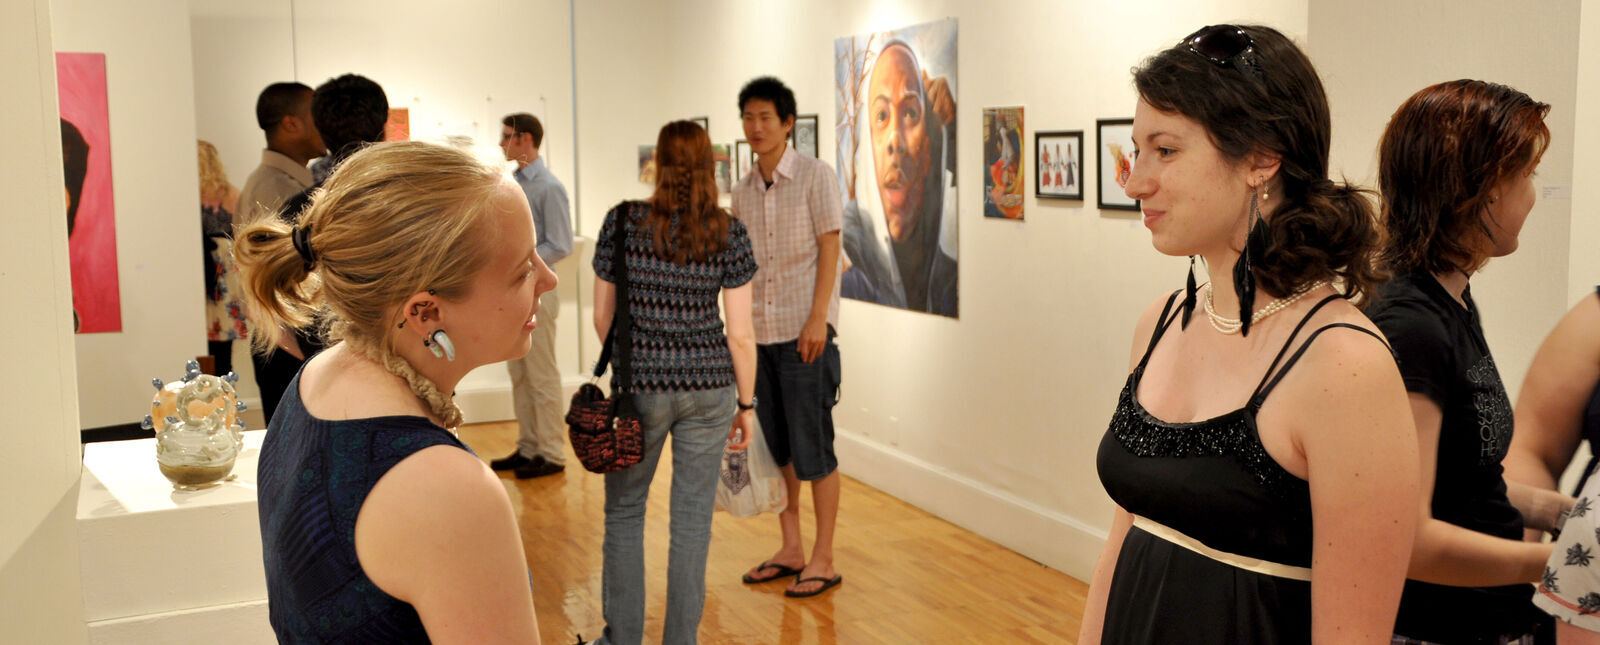 两个女学生在乔治·沃特斯画廊的艺术展上聊天